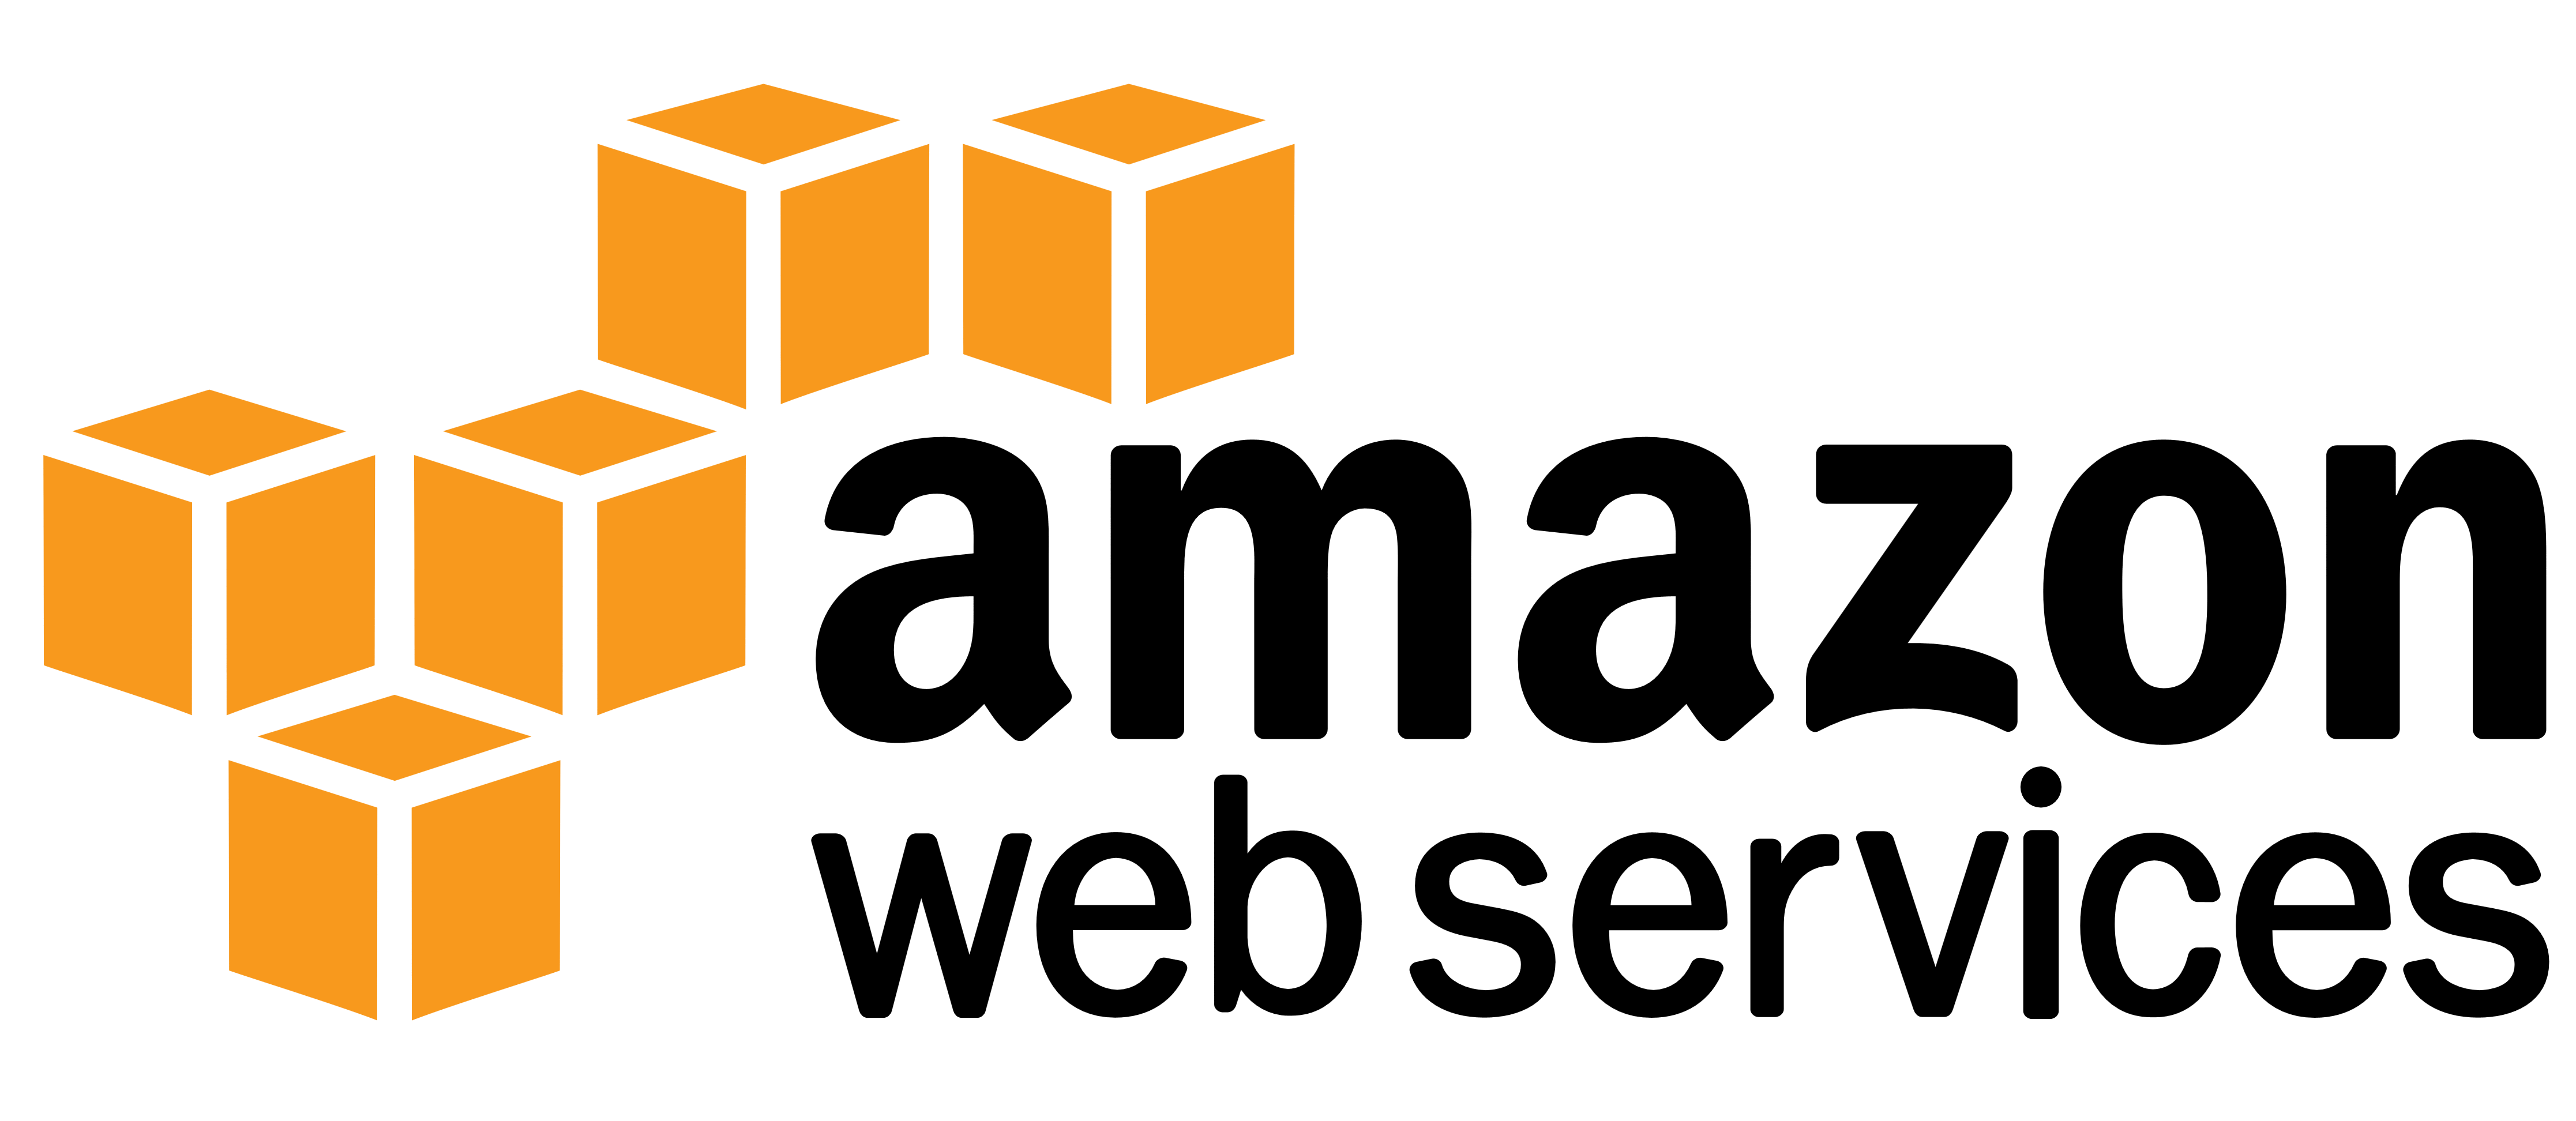 Amazon Web Services (AWS) – Logos Download - Amazon AWS Logo